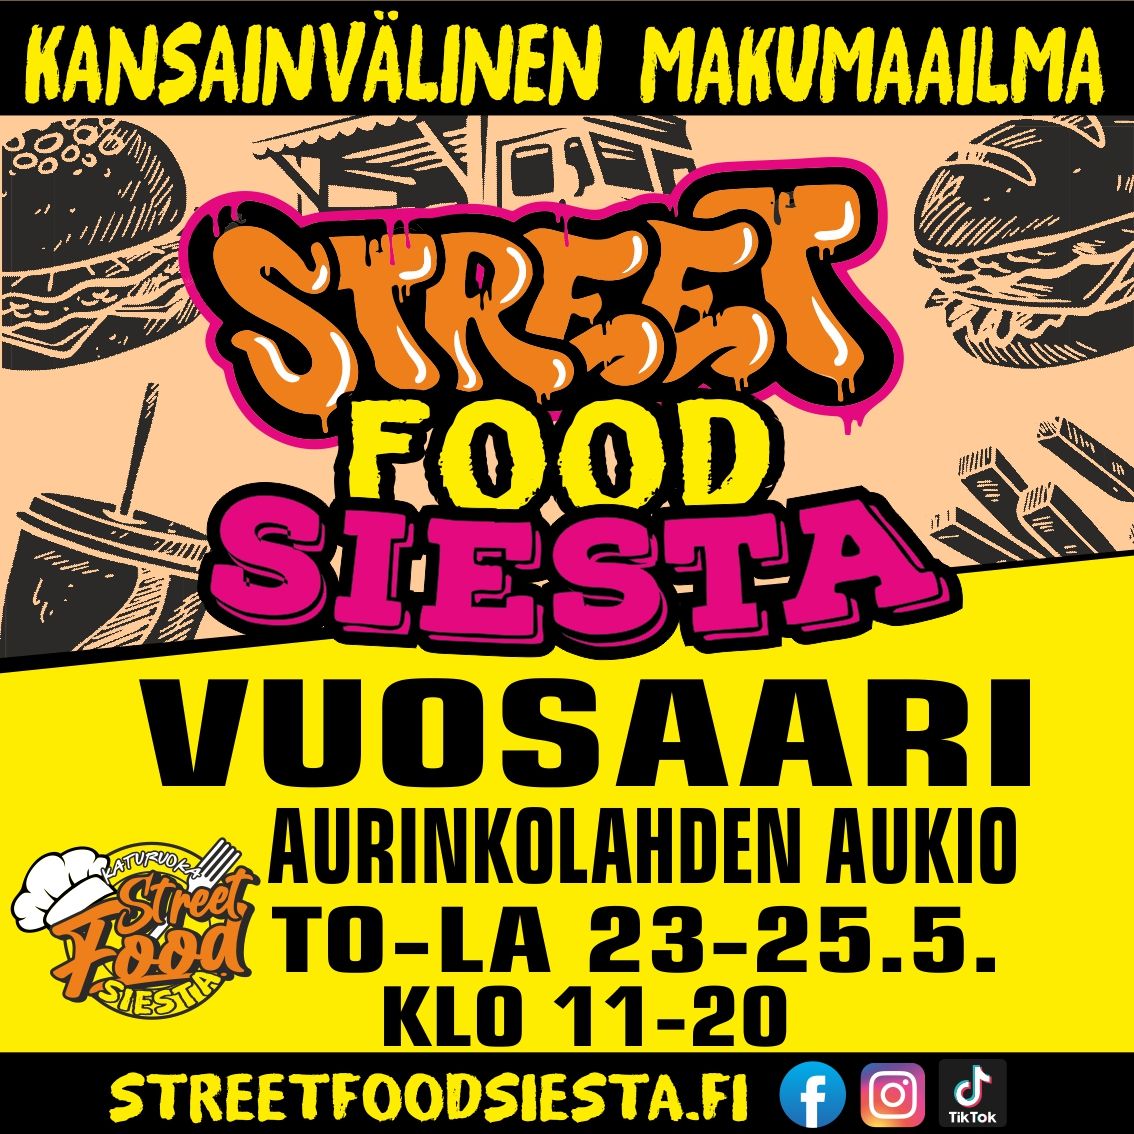 Street Food Siesta Vuosaari Aurinkolahden Aukio